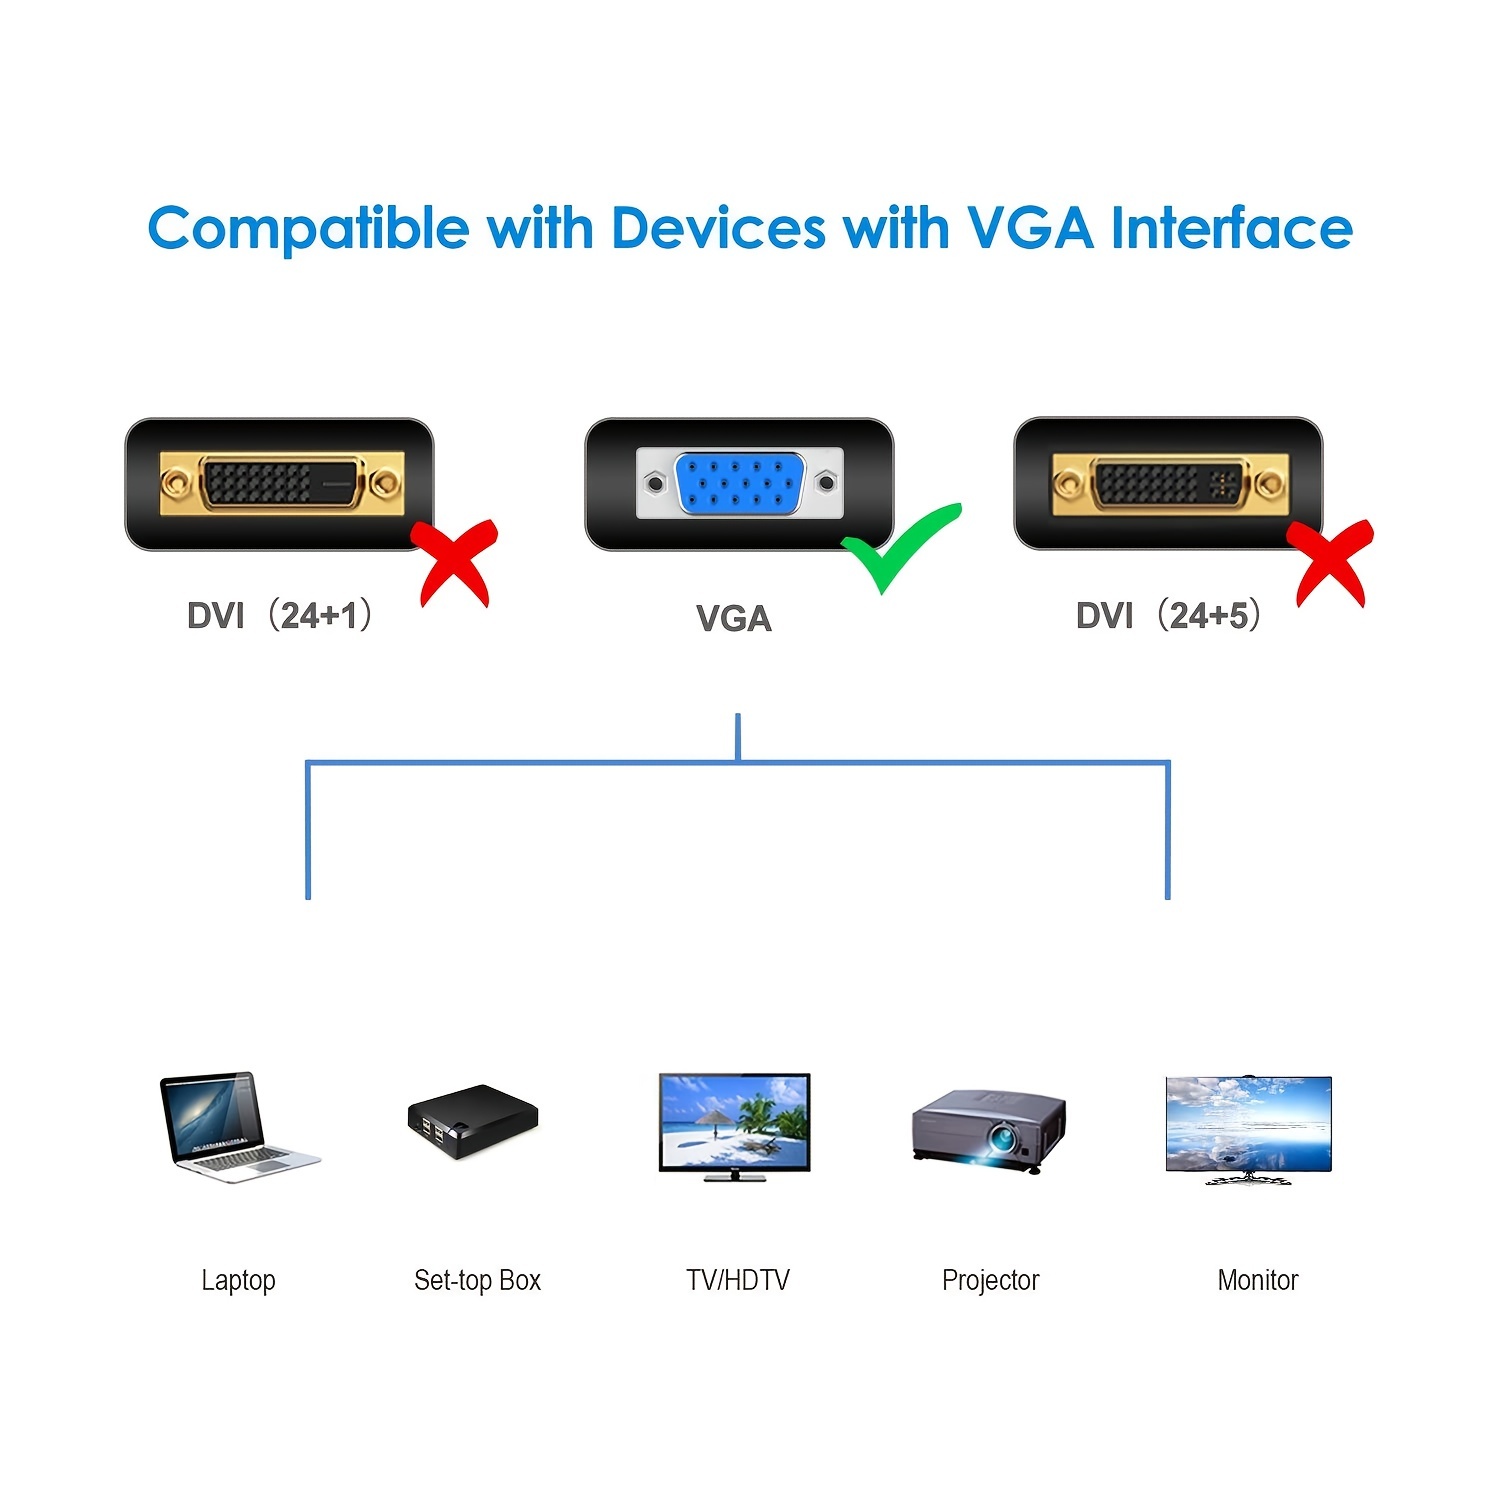 Cable VGA 15 pines para conectar pc con monitores o pantallas